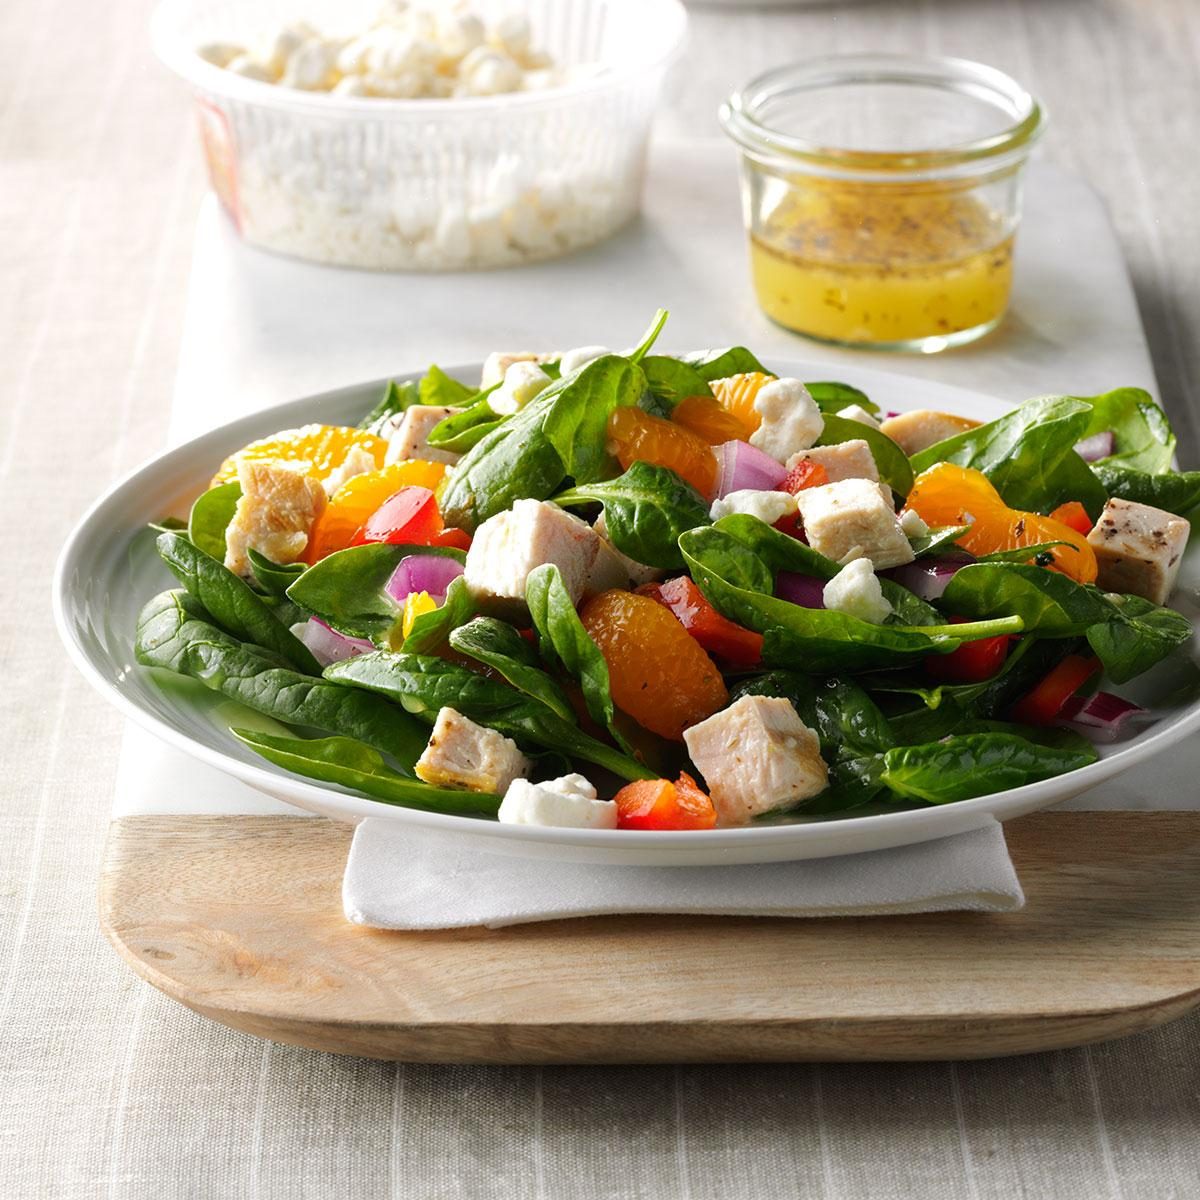 Orange Chicken Spinach Salad Recipe: How to Make It